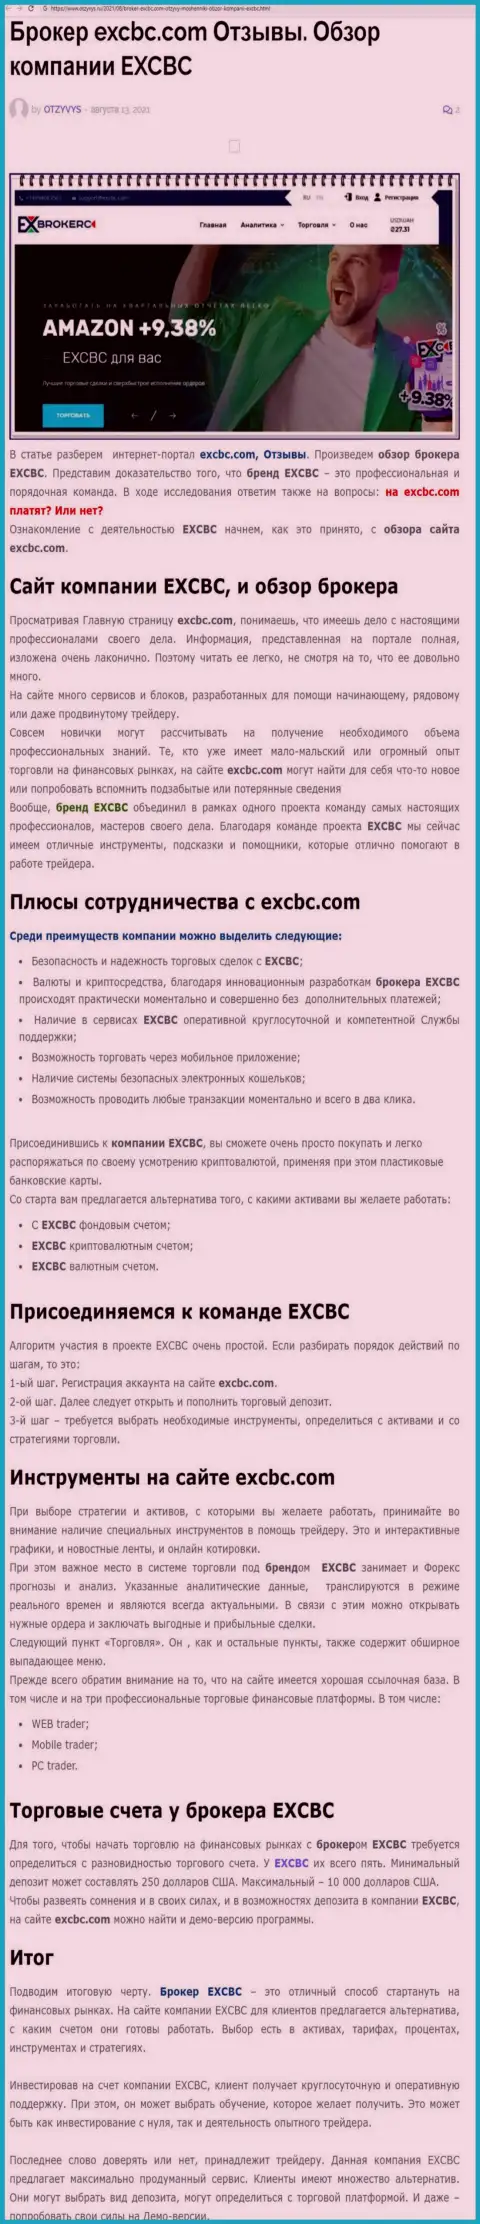 EXCBC - это ответственная и надёжная FOREX дилинговая компания, это следует из информационной статьи на интернет-сервисе отзывс ру